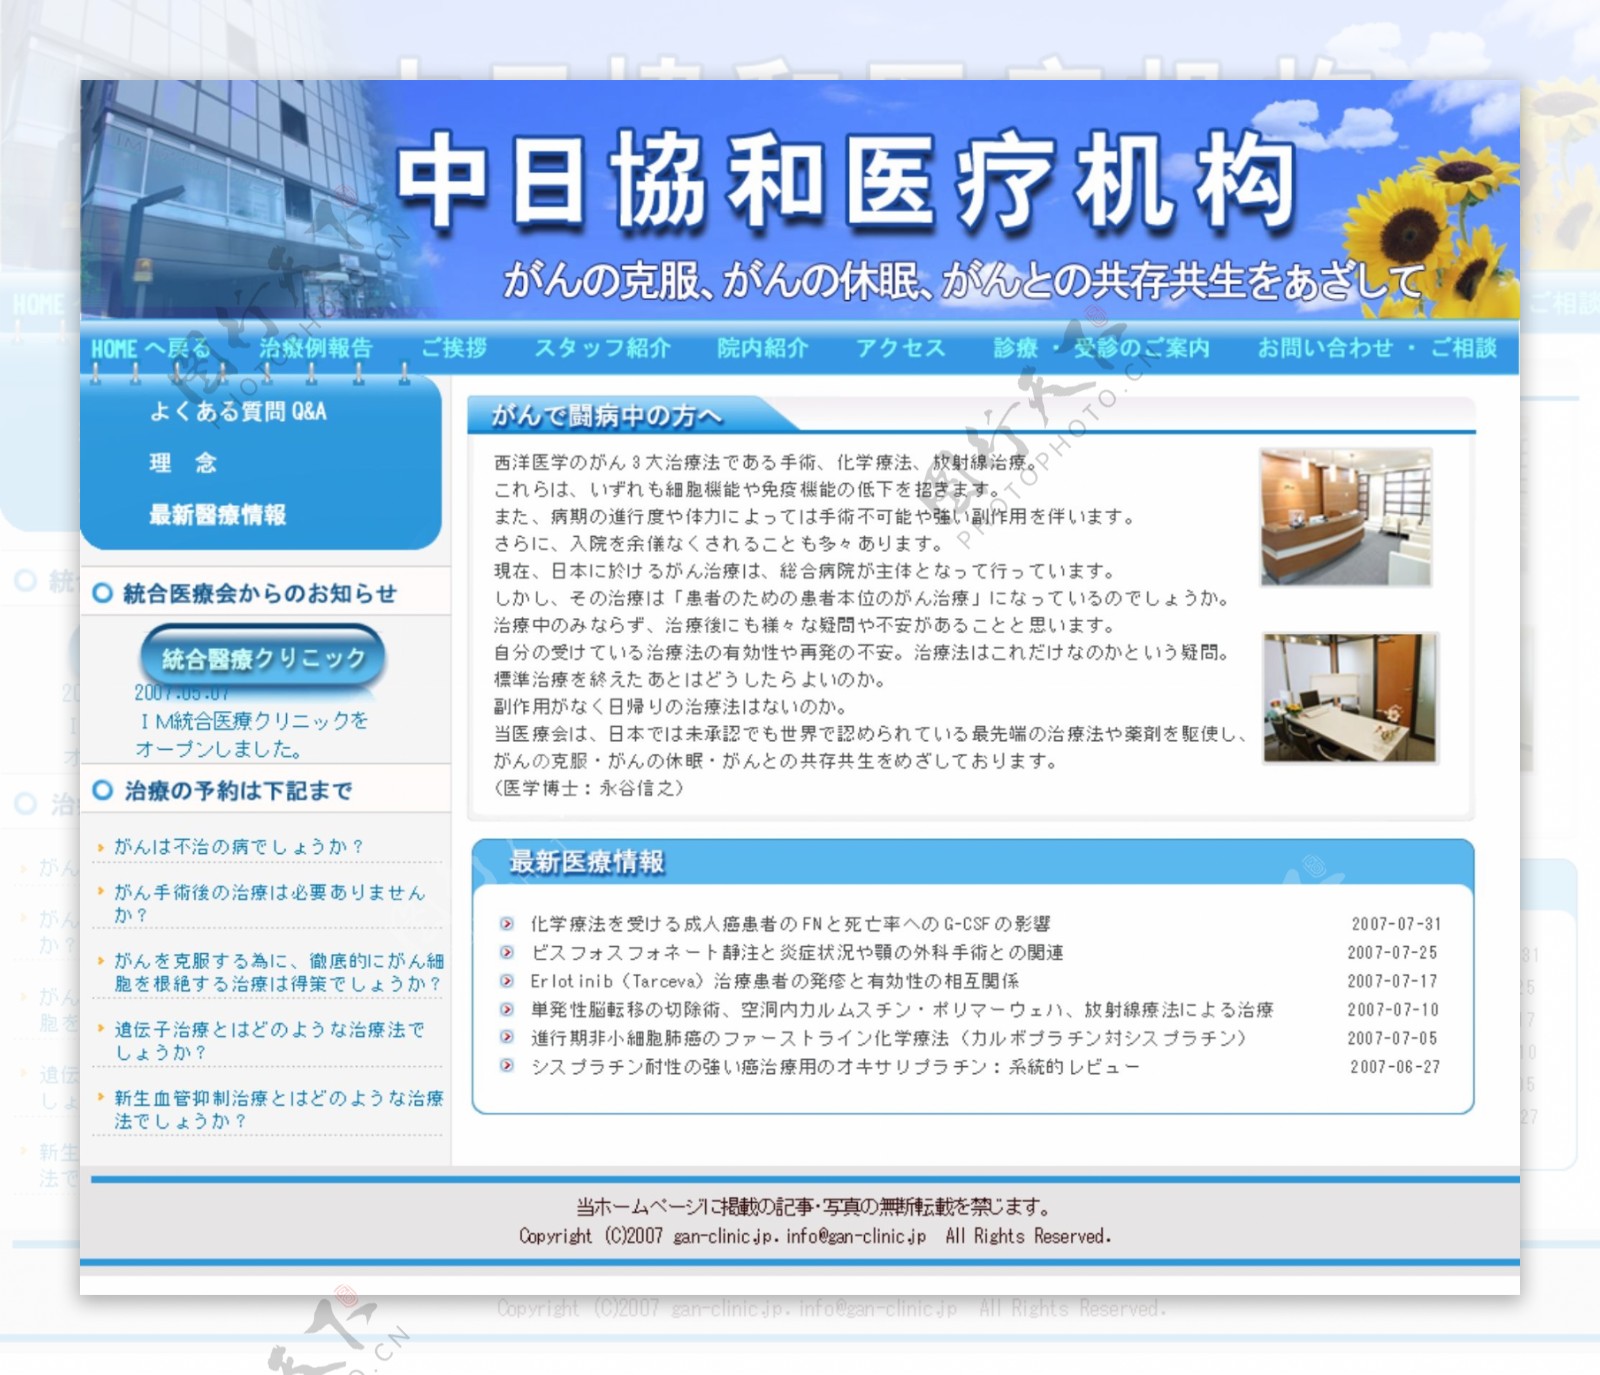 日本医院网站图片